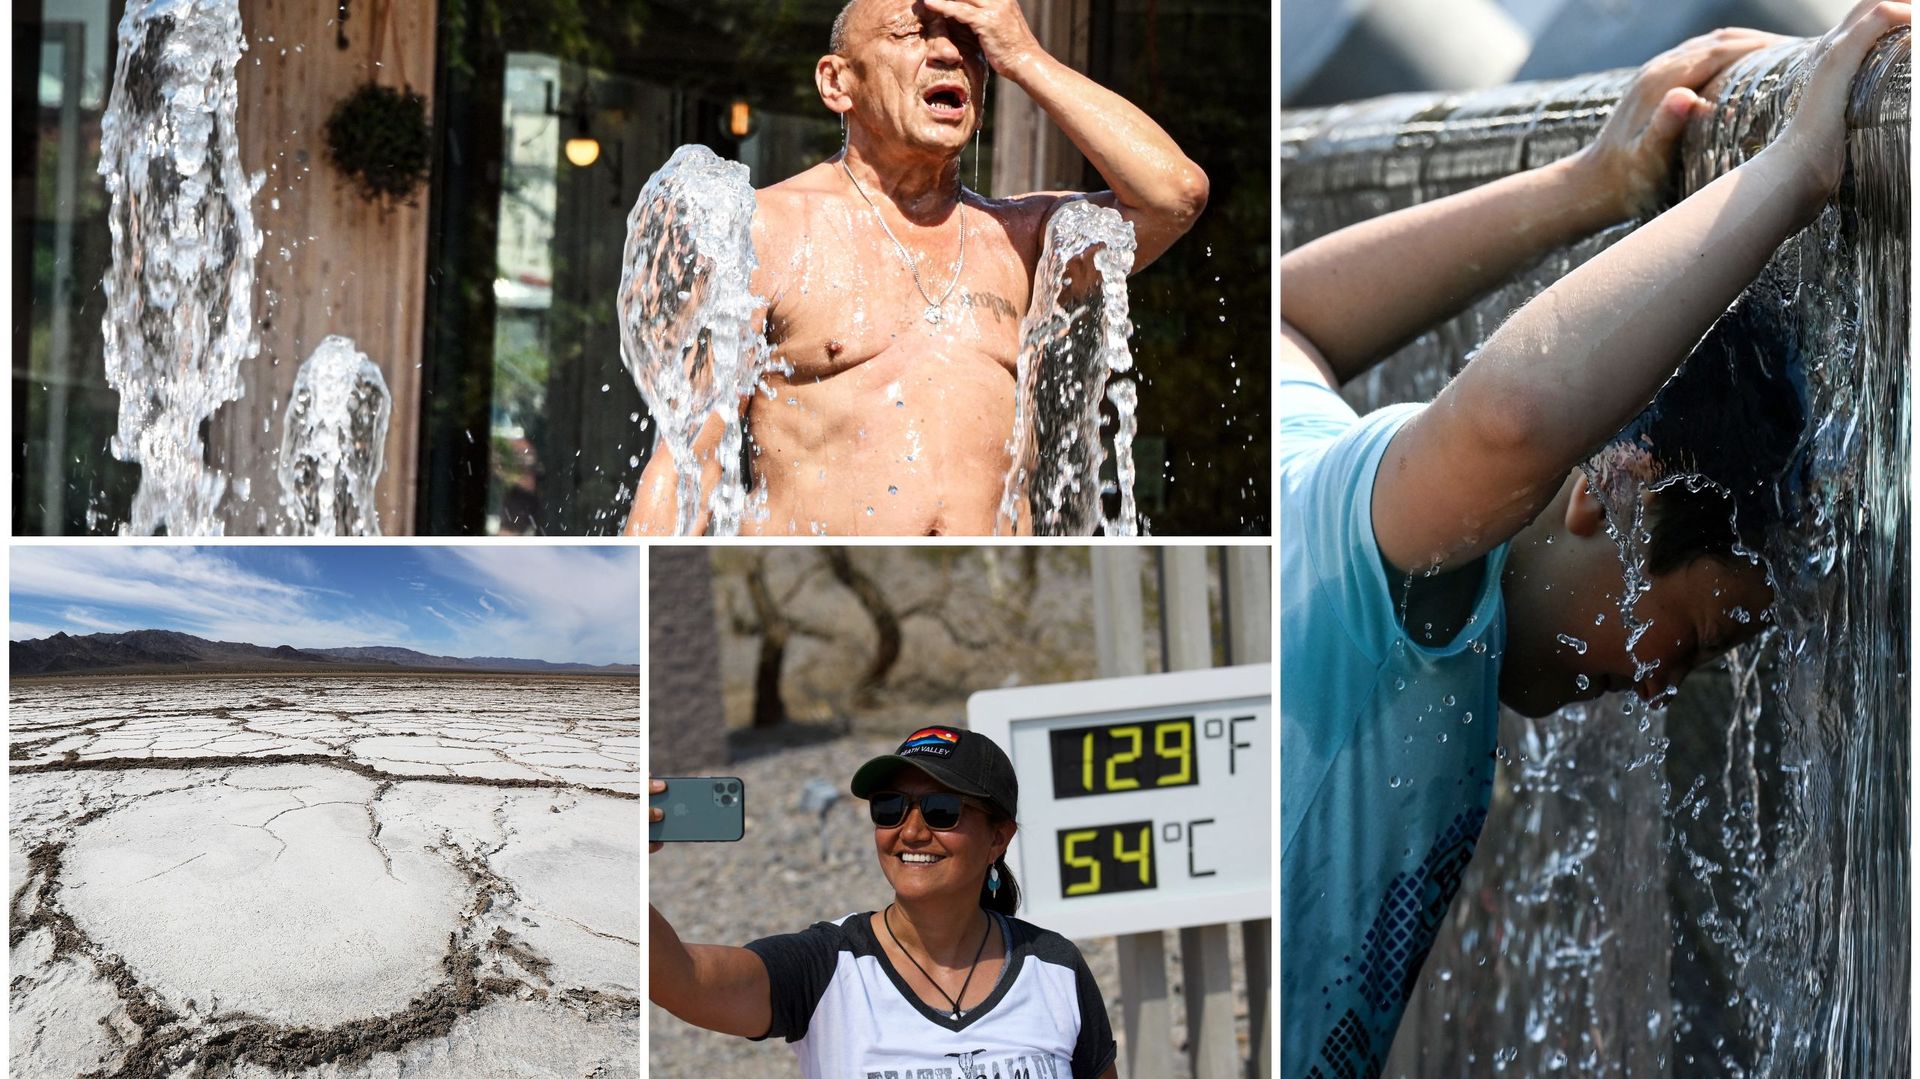 Dès le mois de juin, plusieurs vagues de chaleur ont eu lieu dans le monde